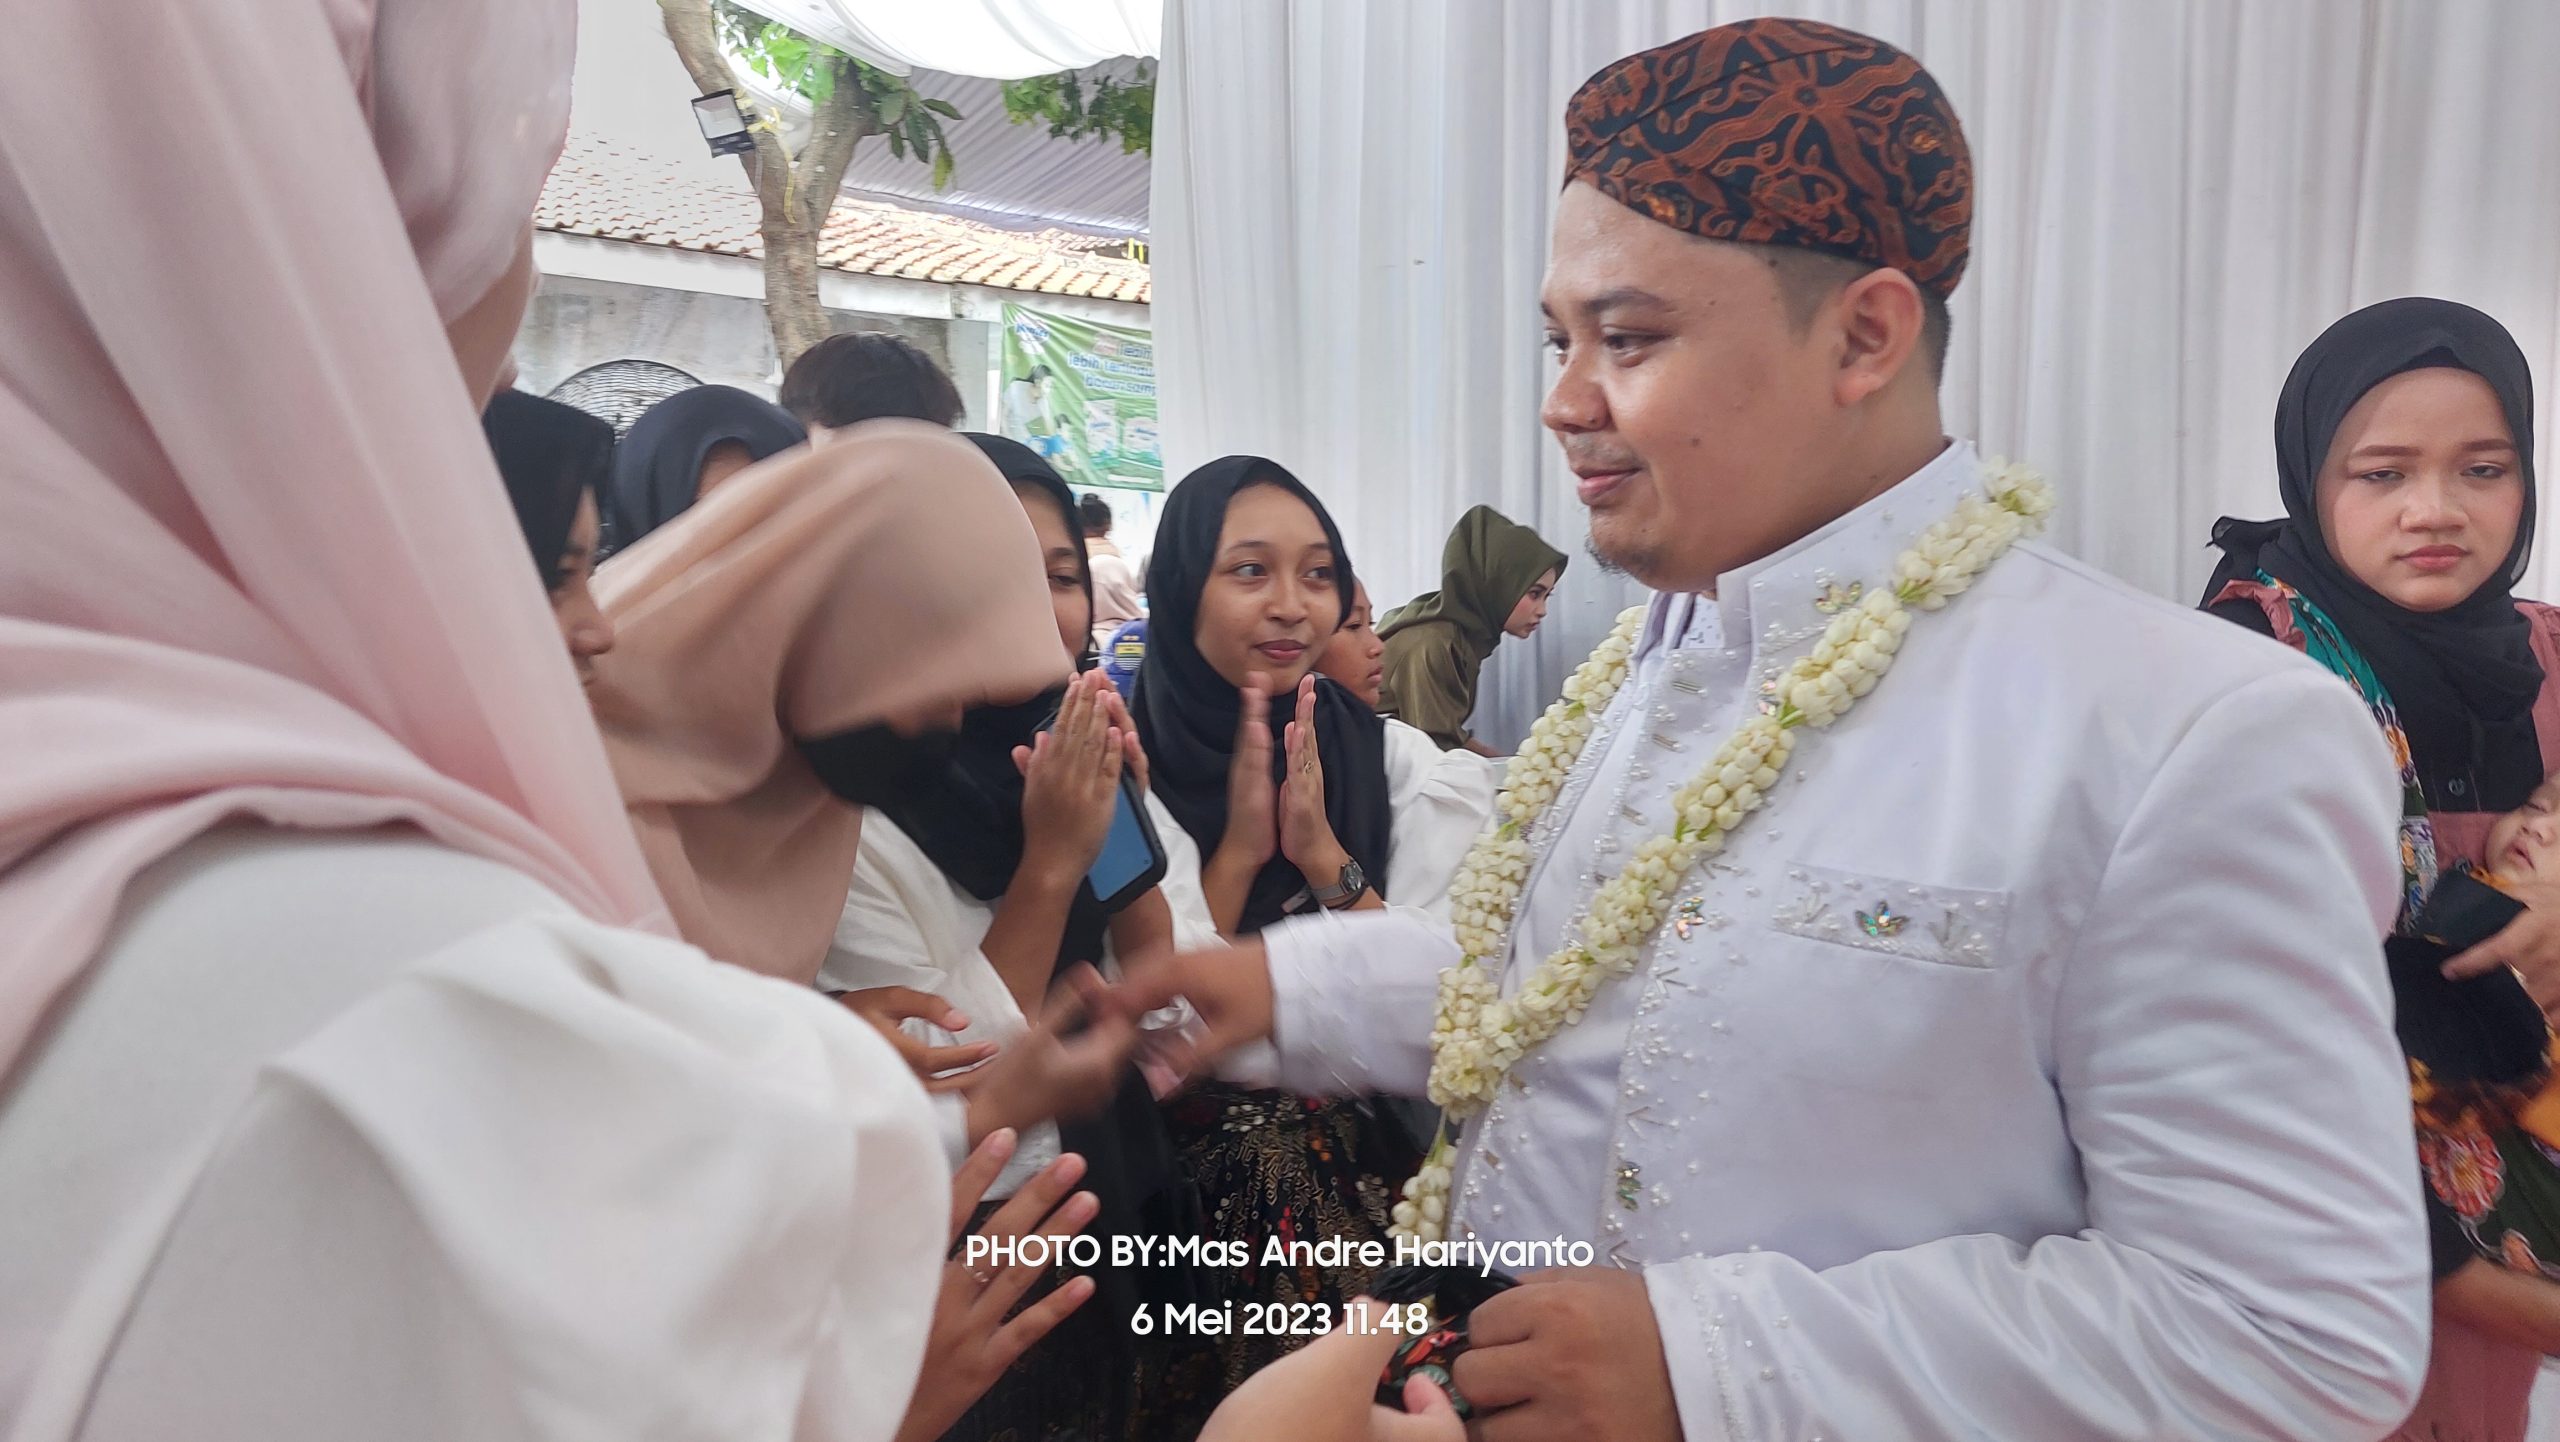 Pemred RSU dan Owner AR Learning Center Hadiri Pernikahan Kaperwil RSU Wilayah Jawa Barat. The Wedding Of Nesi & Alim. Foto: Dok. Pribadi/Mas Andre Hariyanto (SUARA UTAMA)